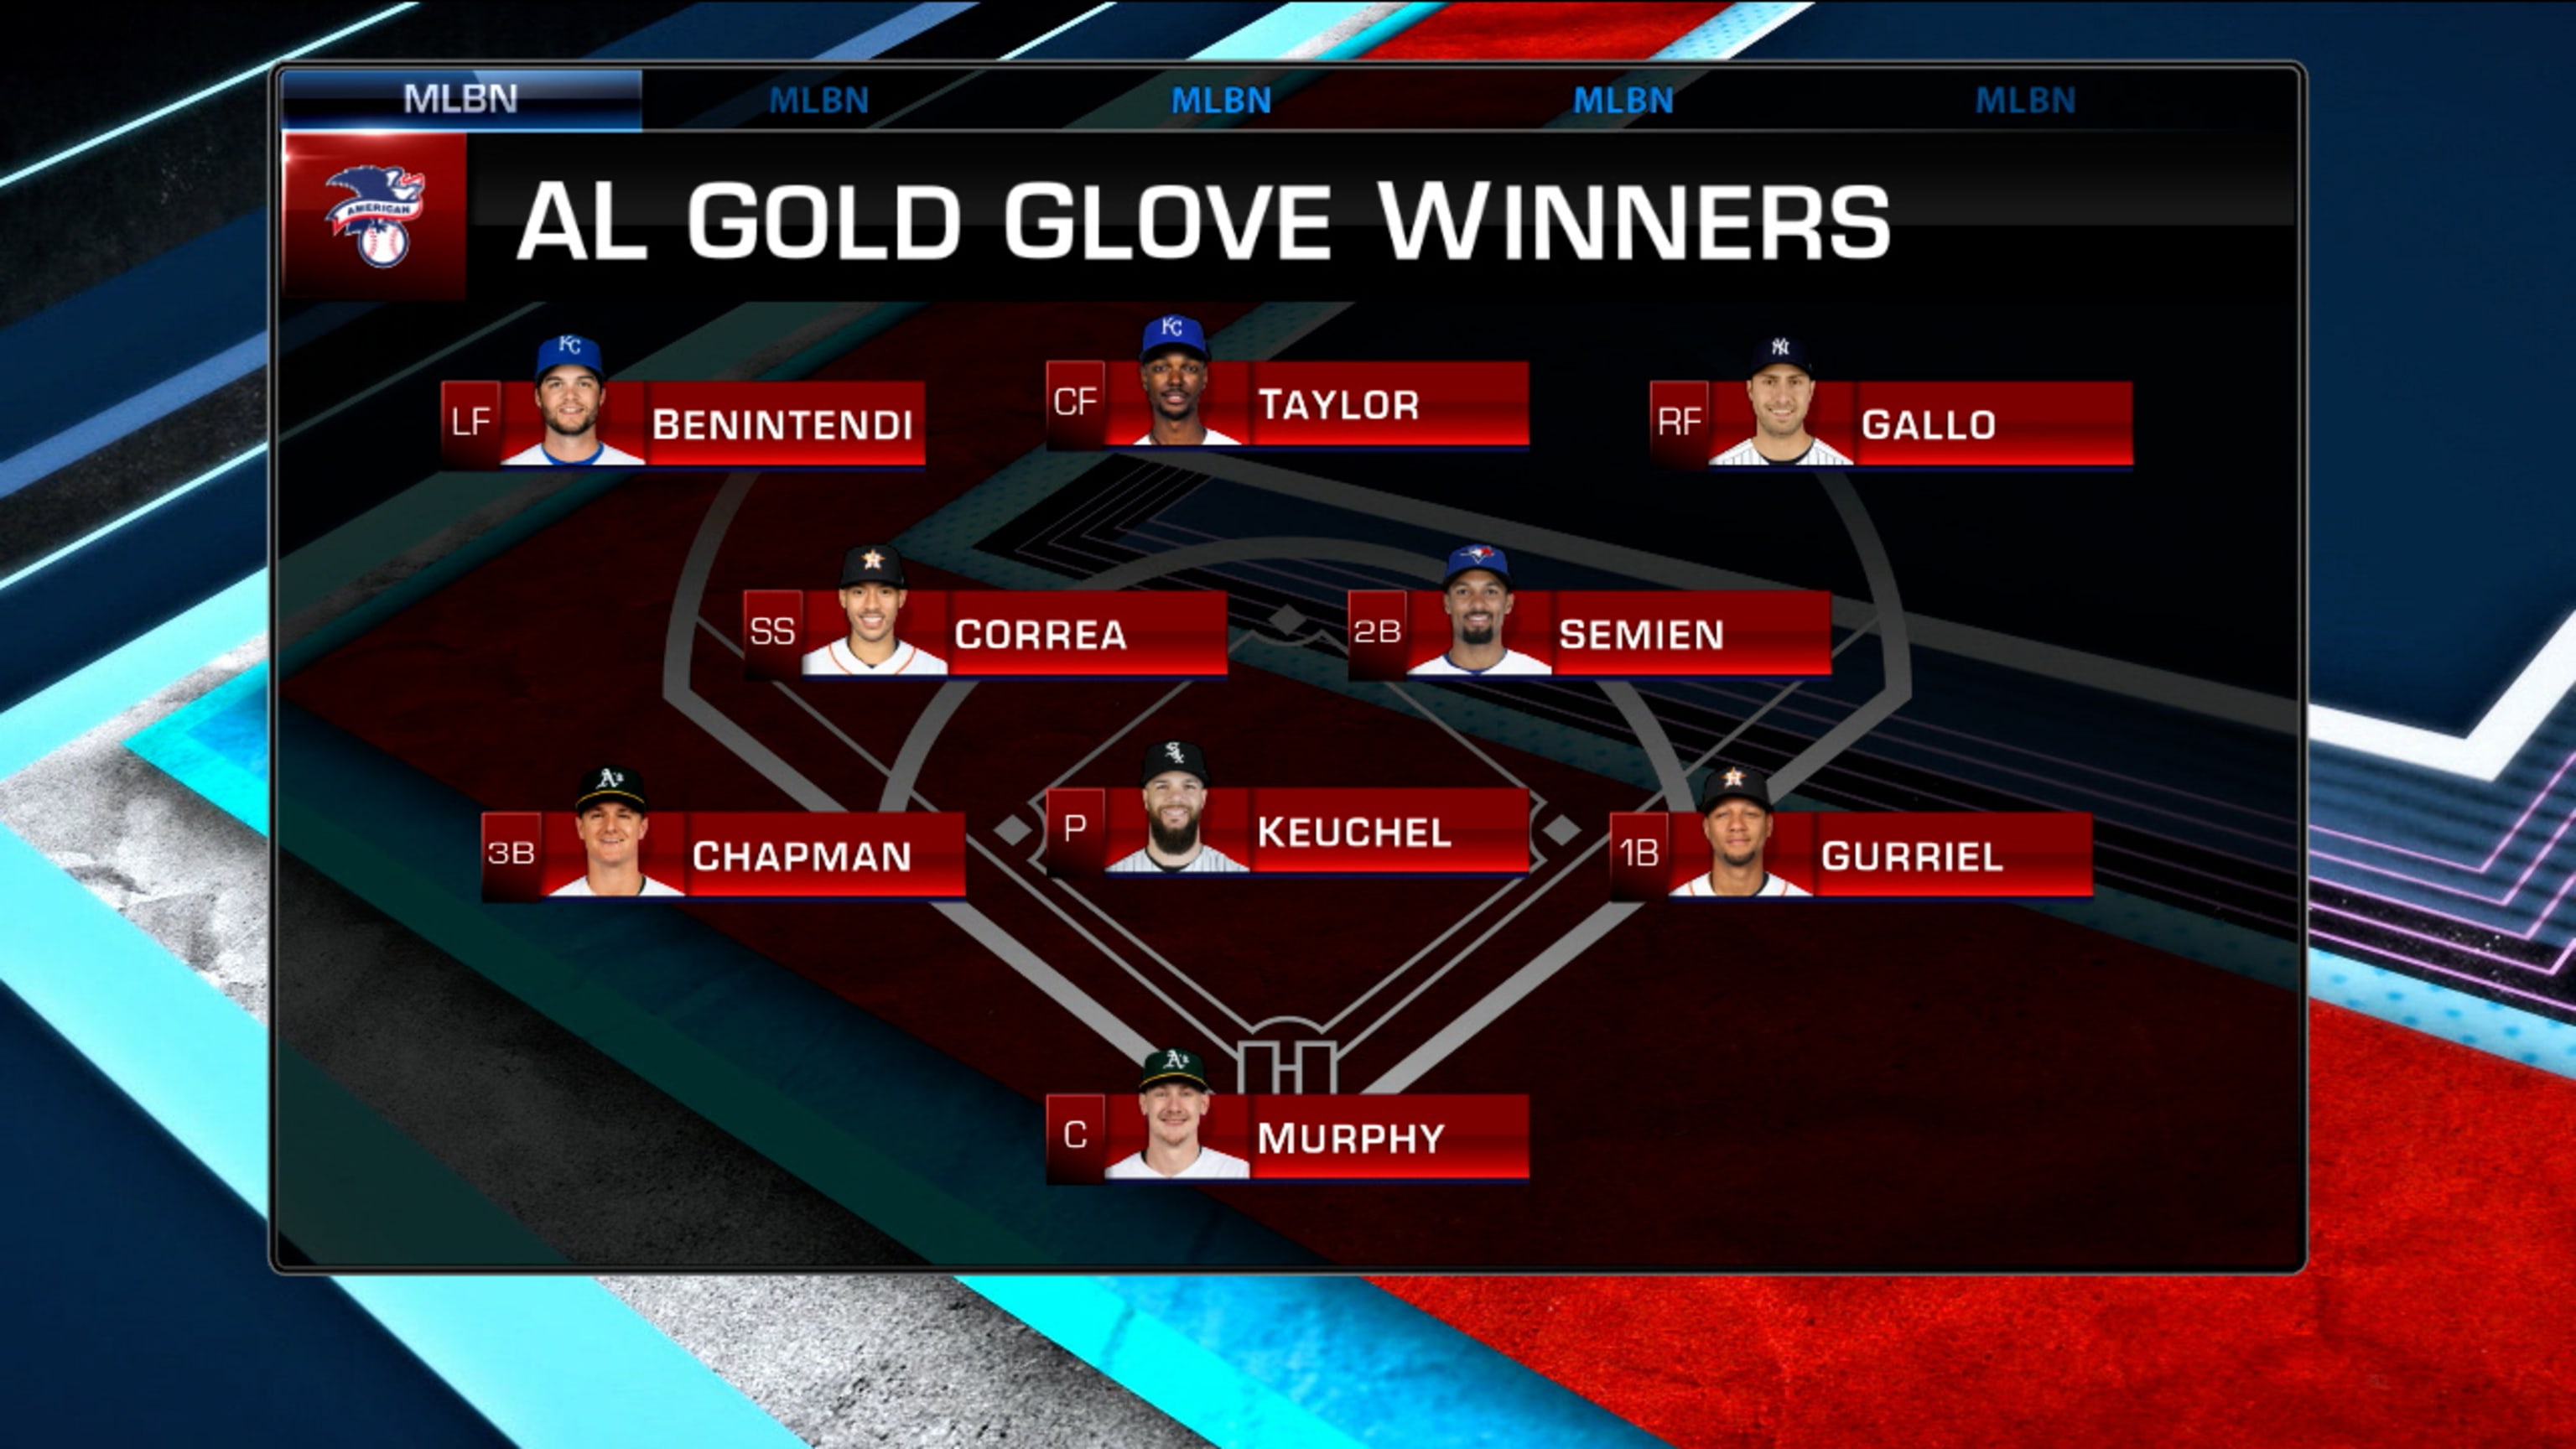 The Golden Glove Award-Baseball